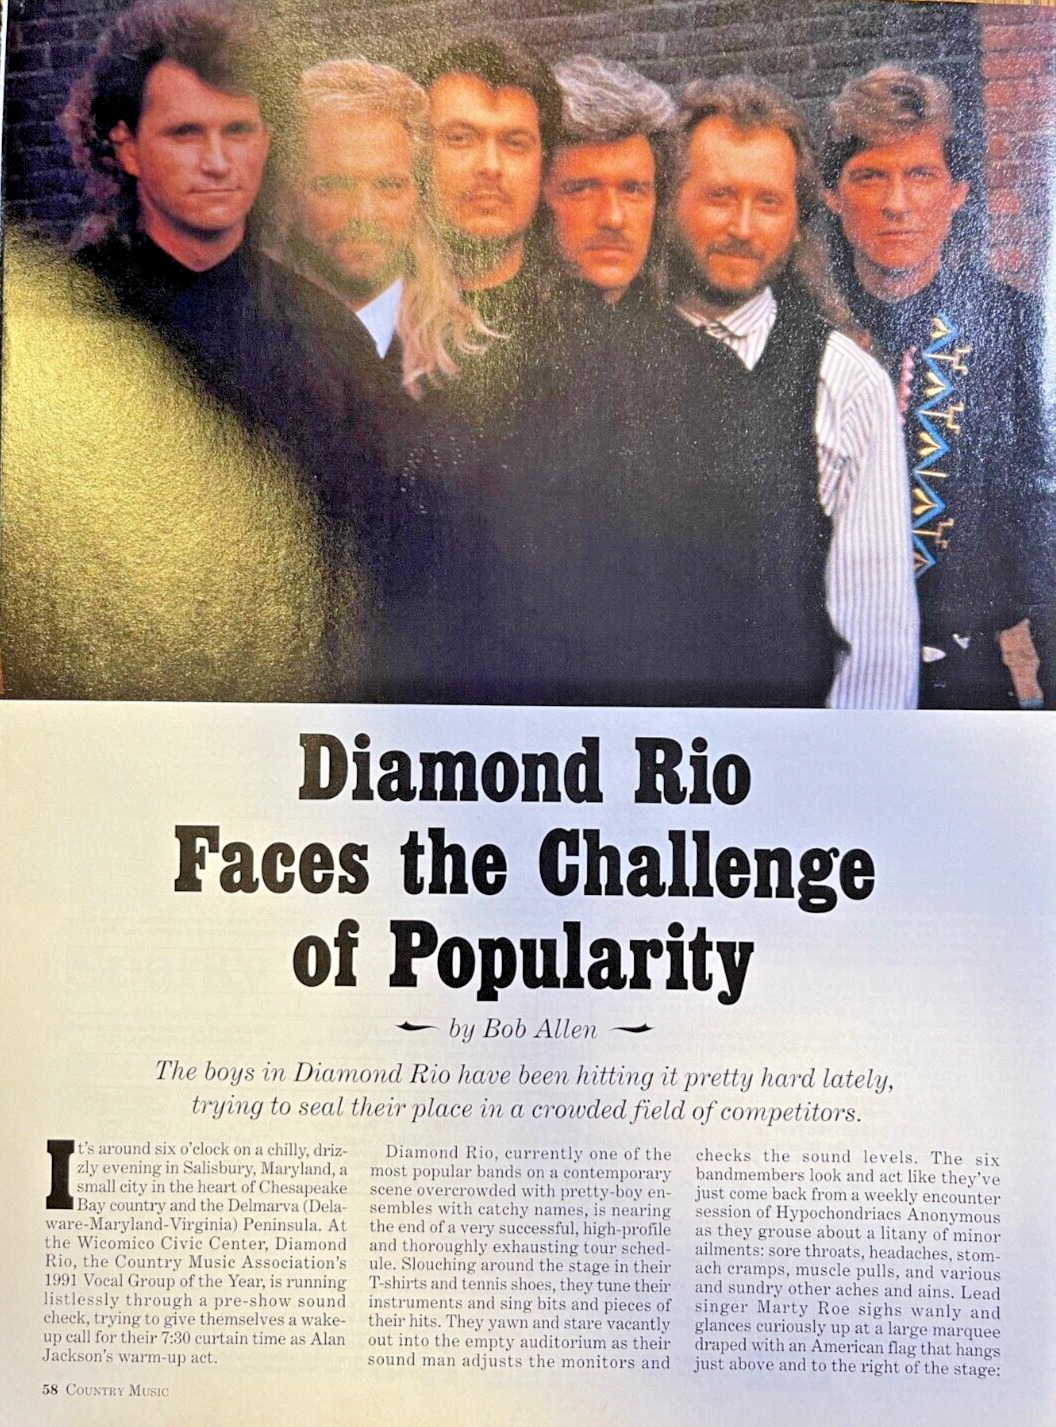 1993 Country Music Group Diamond Rio